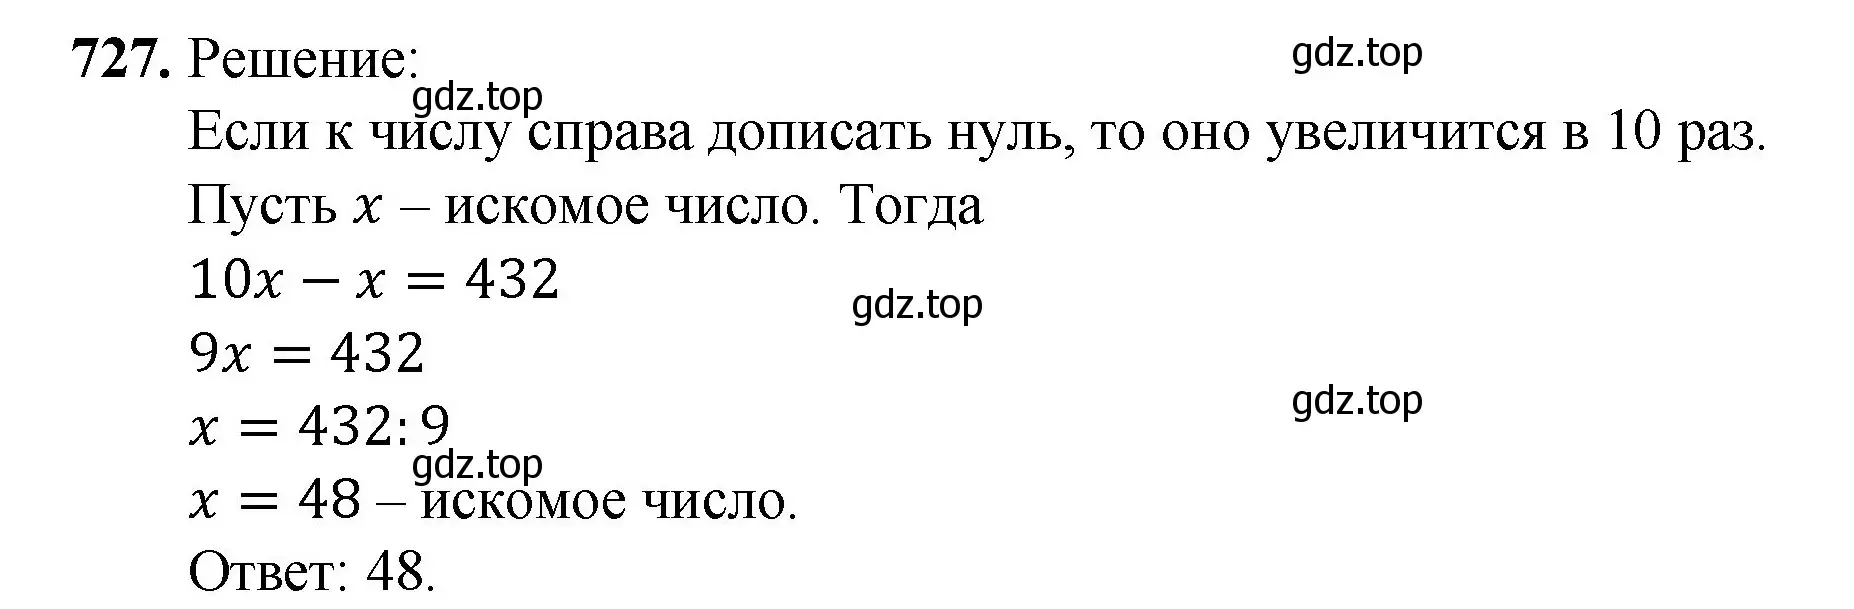 Решение номер 727 (страница 161) гдз по математике 5 класс Мерзляк, Полонский, учебник